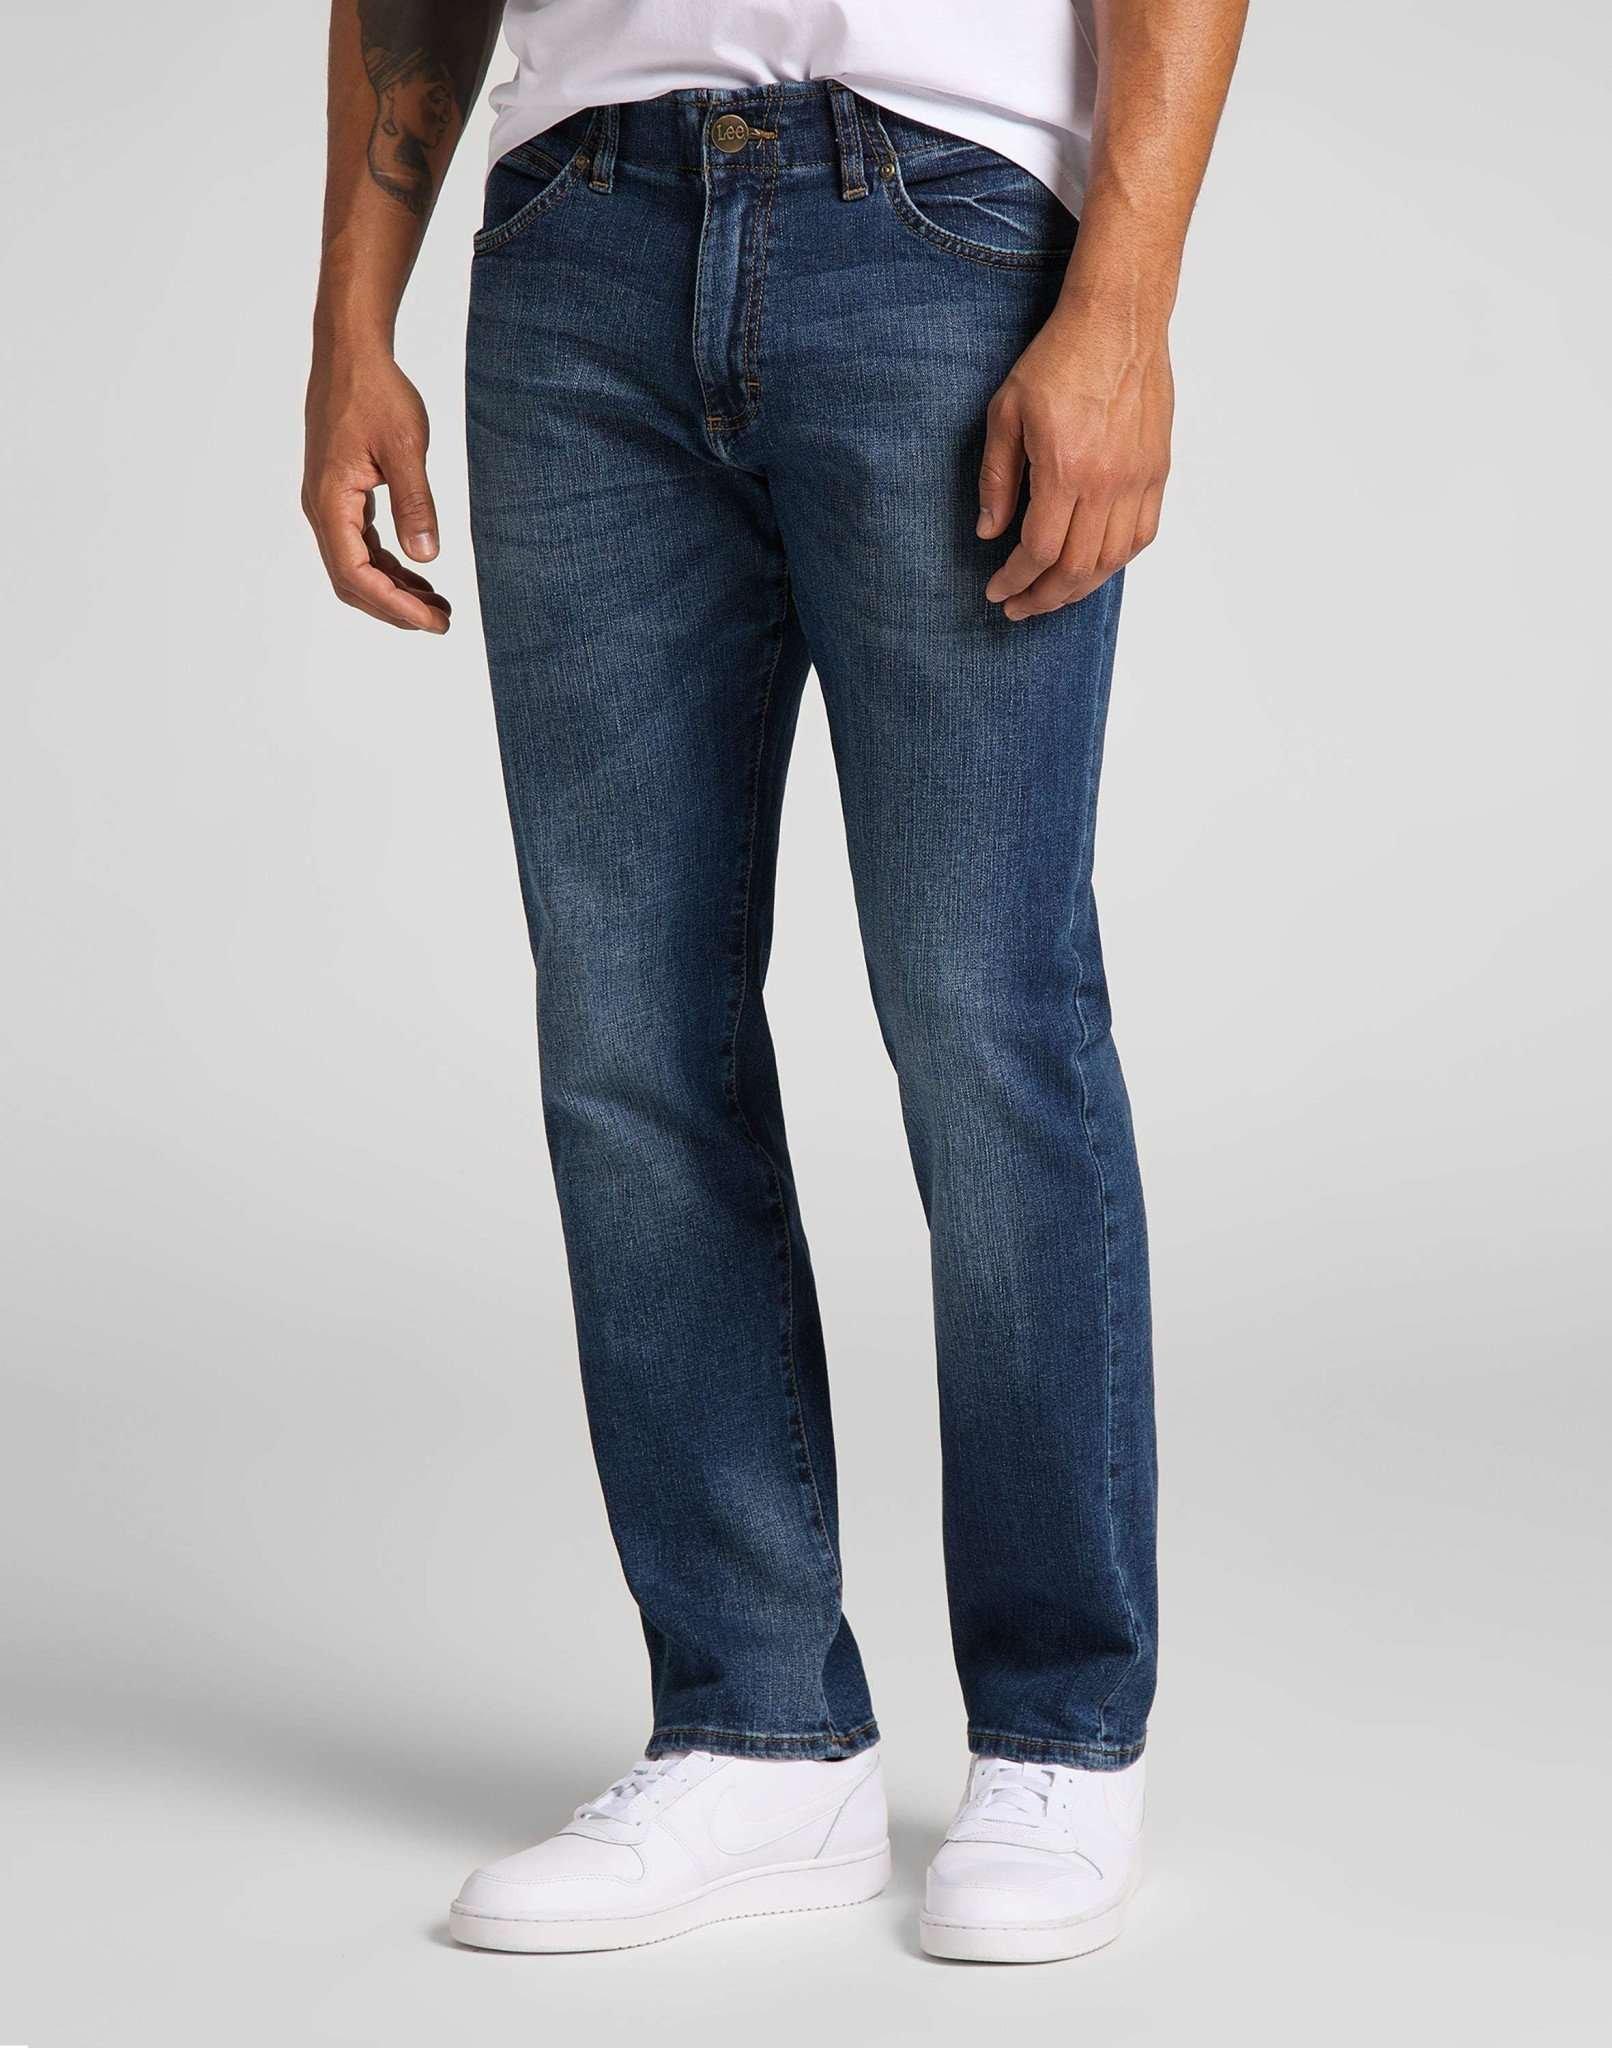 Jeans Straight Leg Xm Herren Blau Denim L30/W31 von Lee